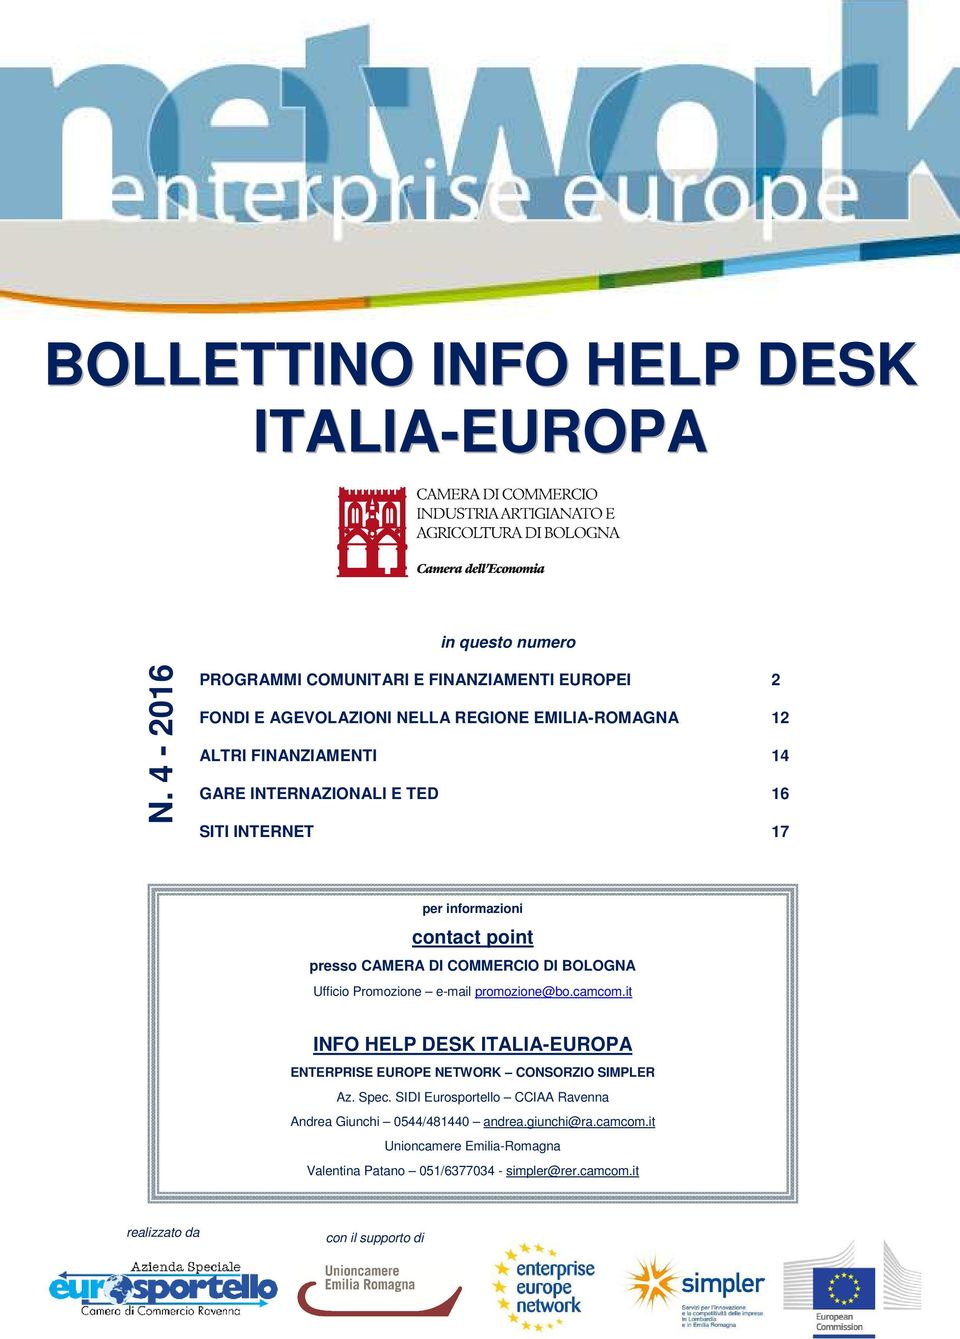 INTERNET 17 per informazioni contact point presso CAMERA DI COMMERCIO DI BOLOGNA Ufficio Promozione e-mail promozione@bo.camcom.